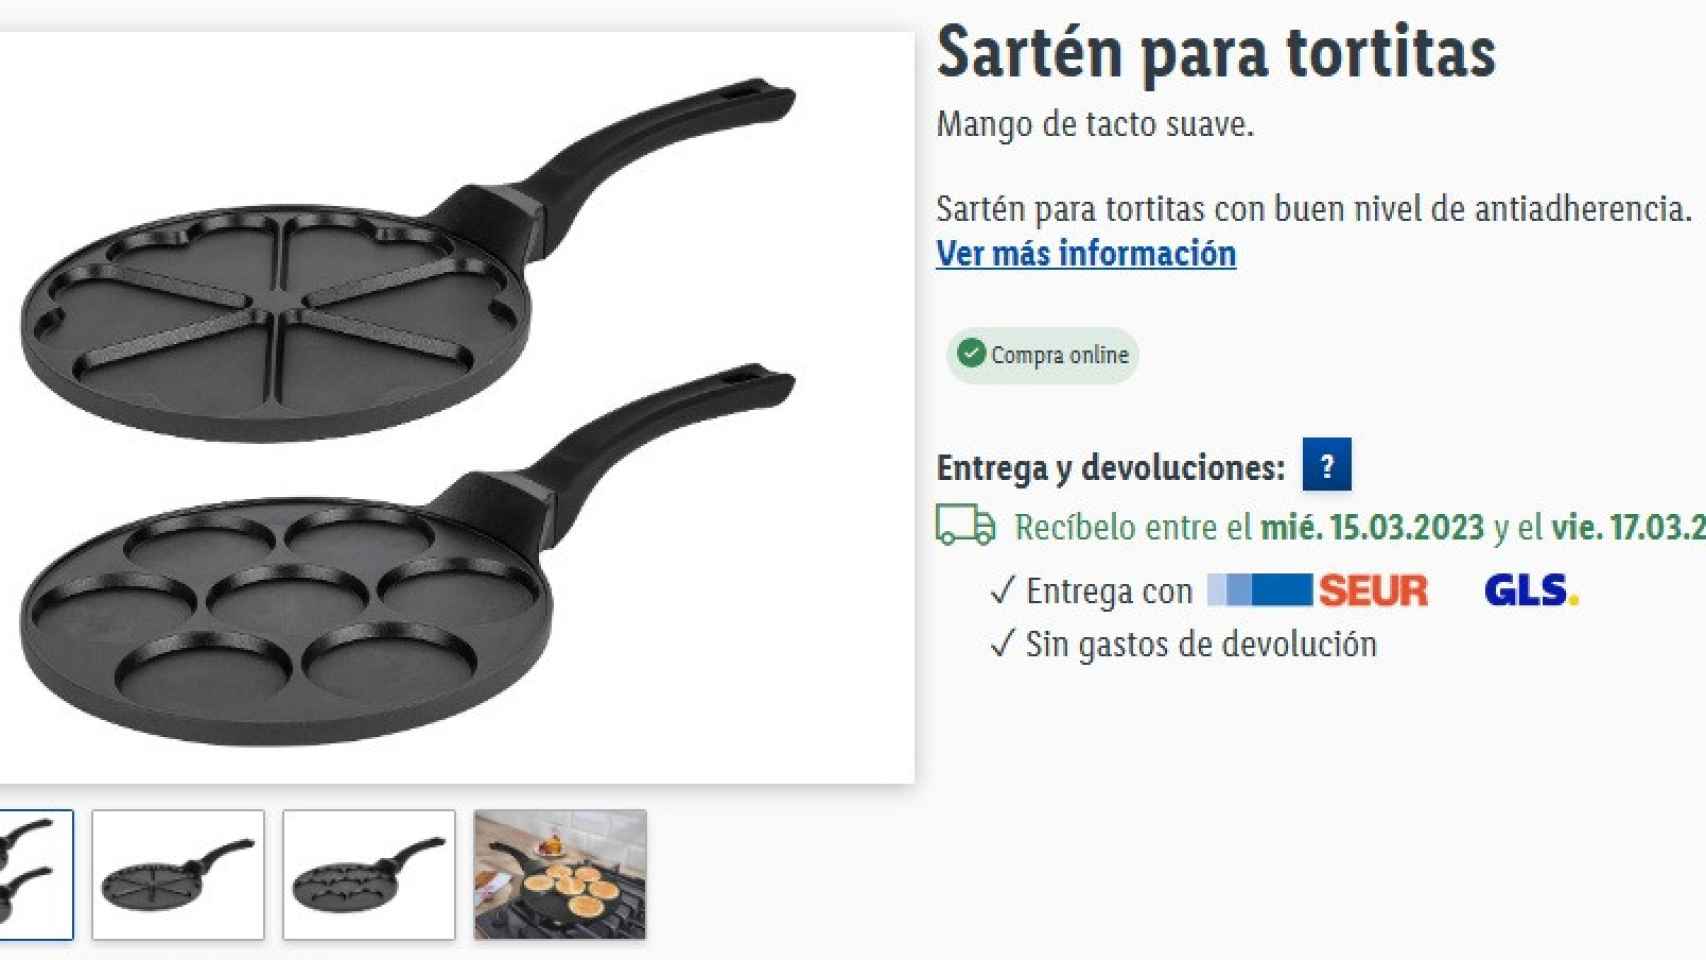 La innovadora nueva sartén de Lidl para hacer tortitas en casa que arrasa:  cuesta 18,99 euros